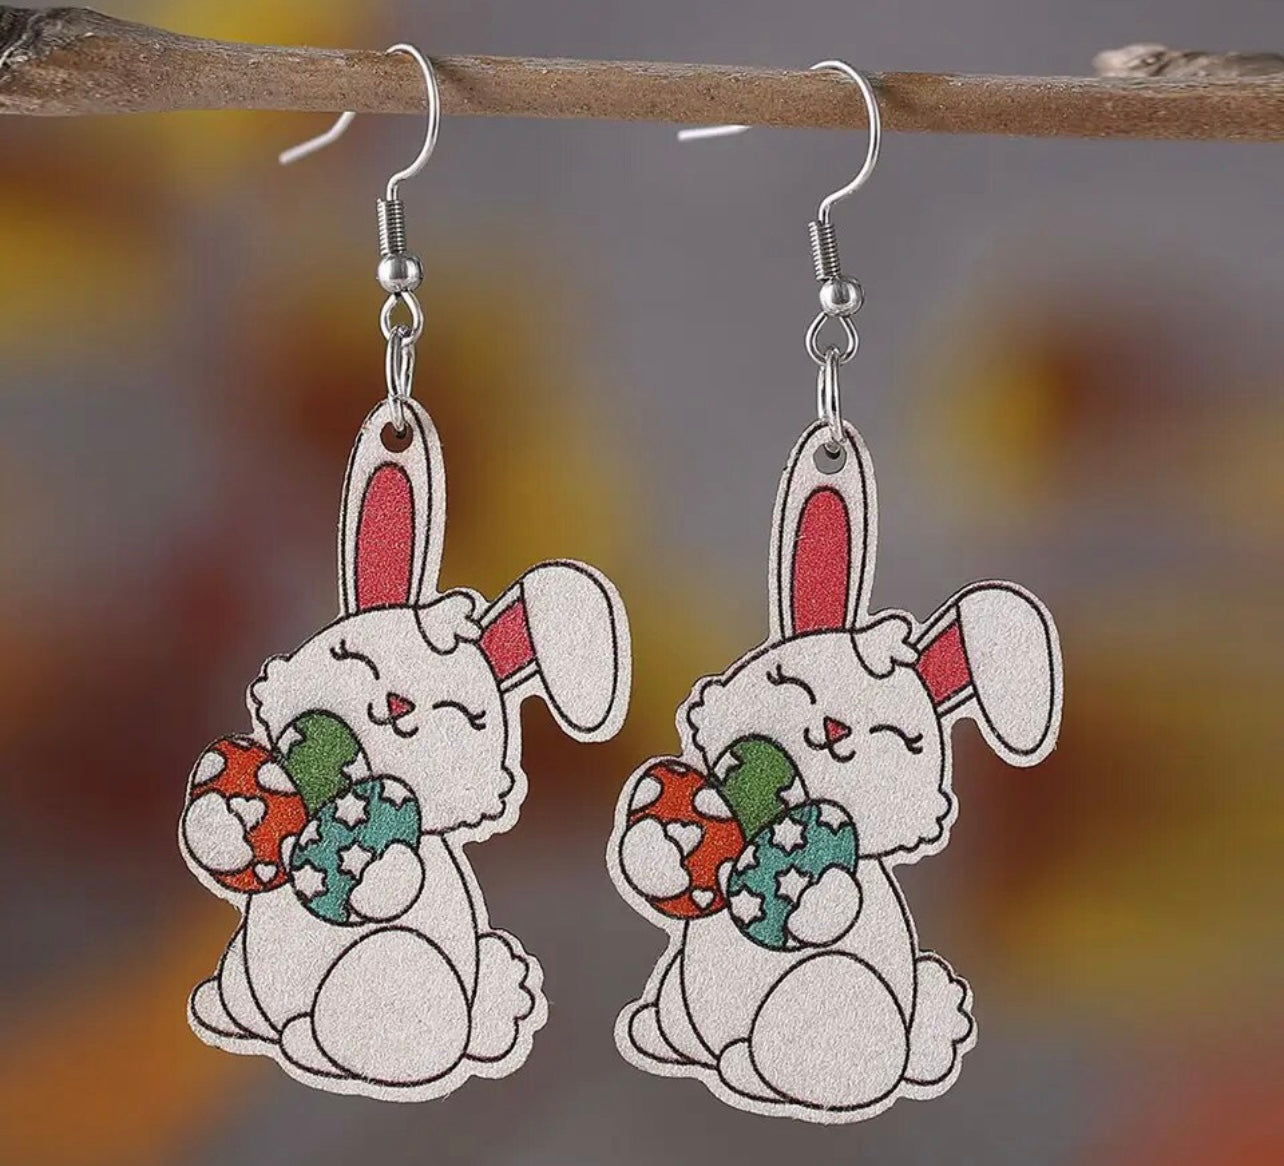 Adorable Easter Bunny Wood Earrings